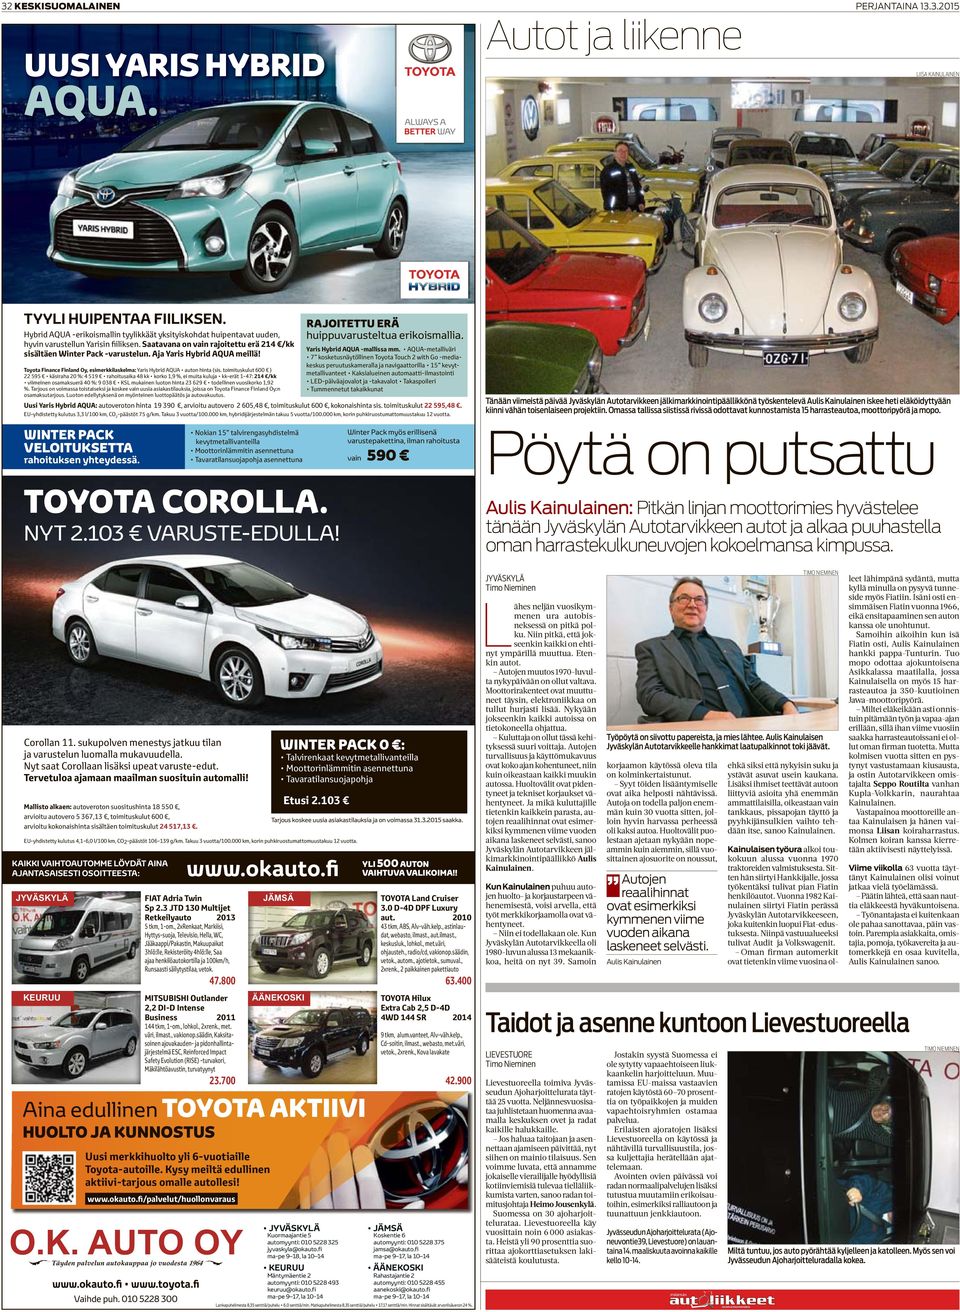 Toyota Finance Finland Oy, esimerkkilaskelma: 214 /kk RAJOITETTU ERÄ huippuvarusteltua erikoismallia. Yaris Hybrid AQUA -mallissa mm.